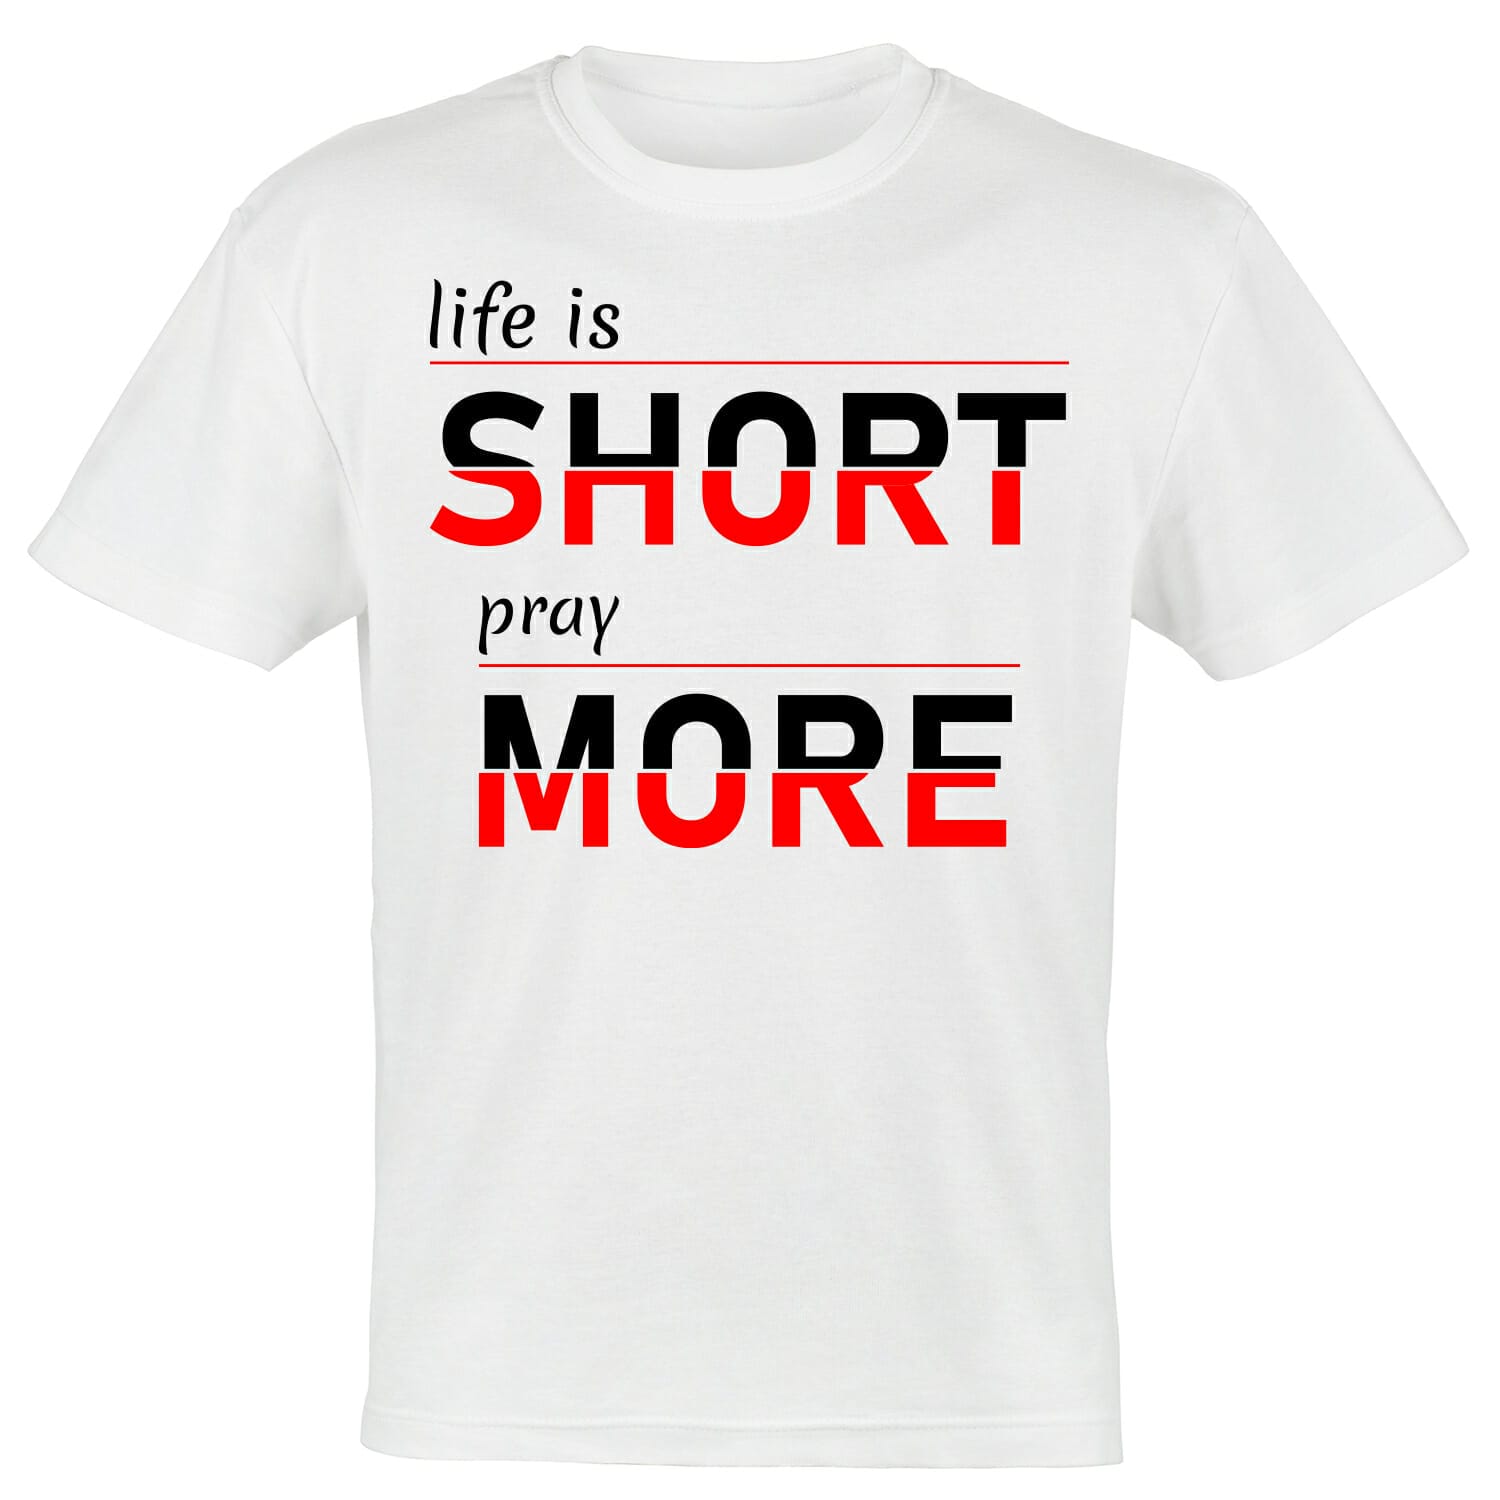 life-is-short-pray-more-tshirt-design